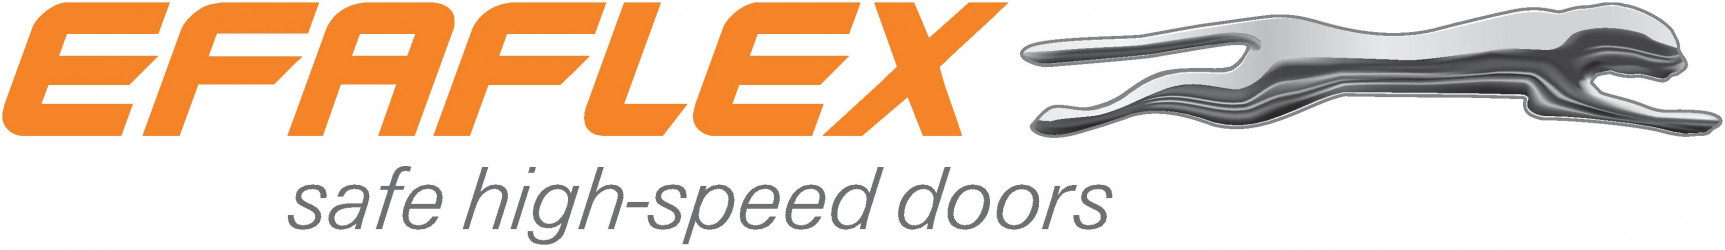 EFAFLEX UK Limited